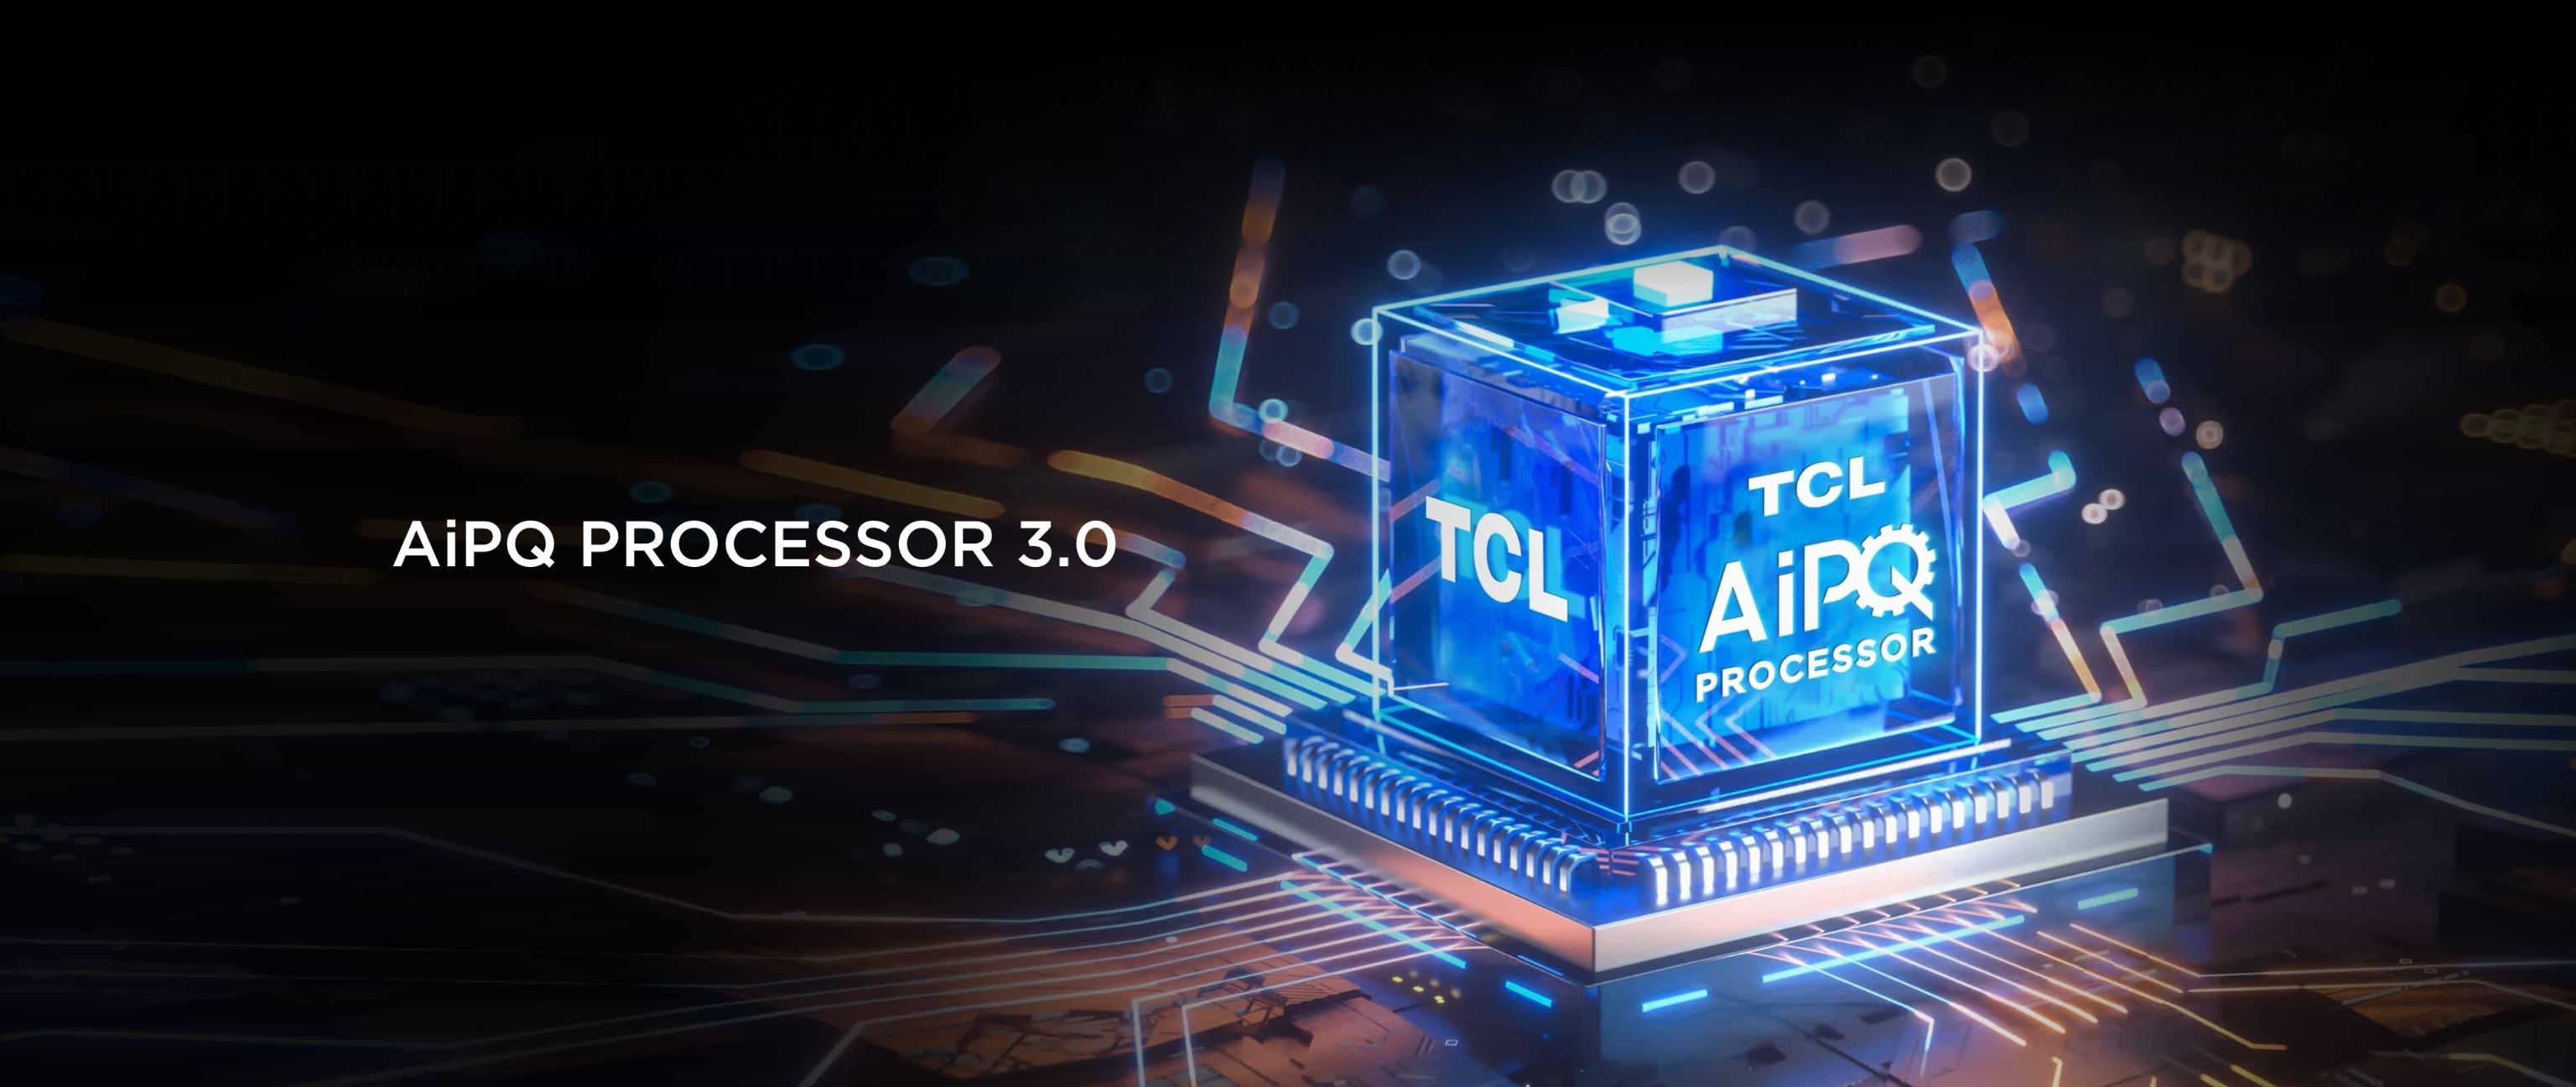 Телевизор TCL C845 на процессоре AiPQ 3.0